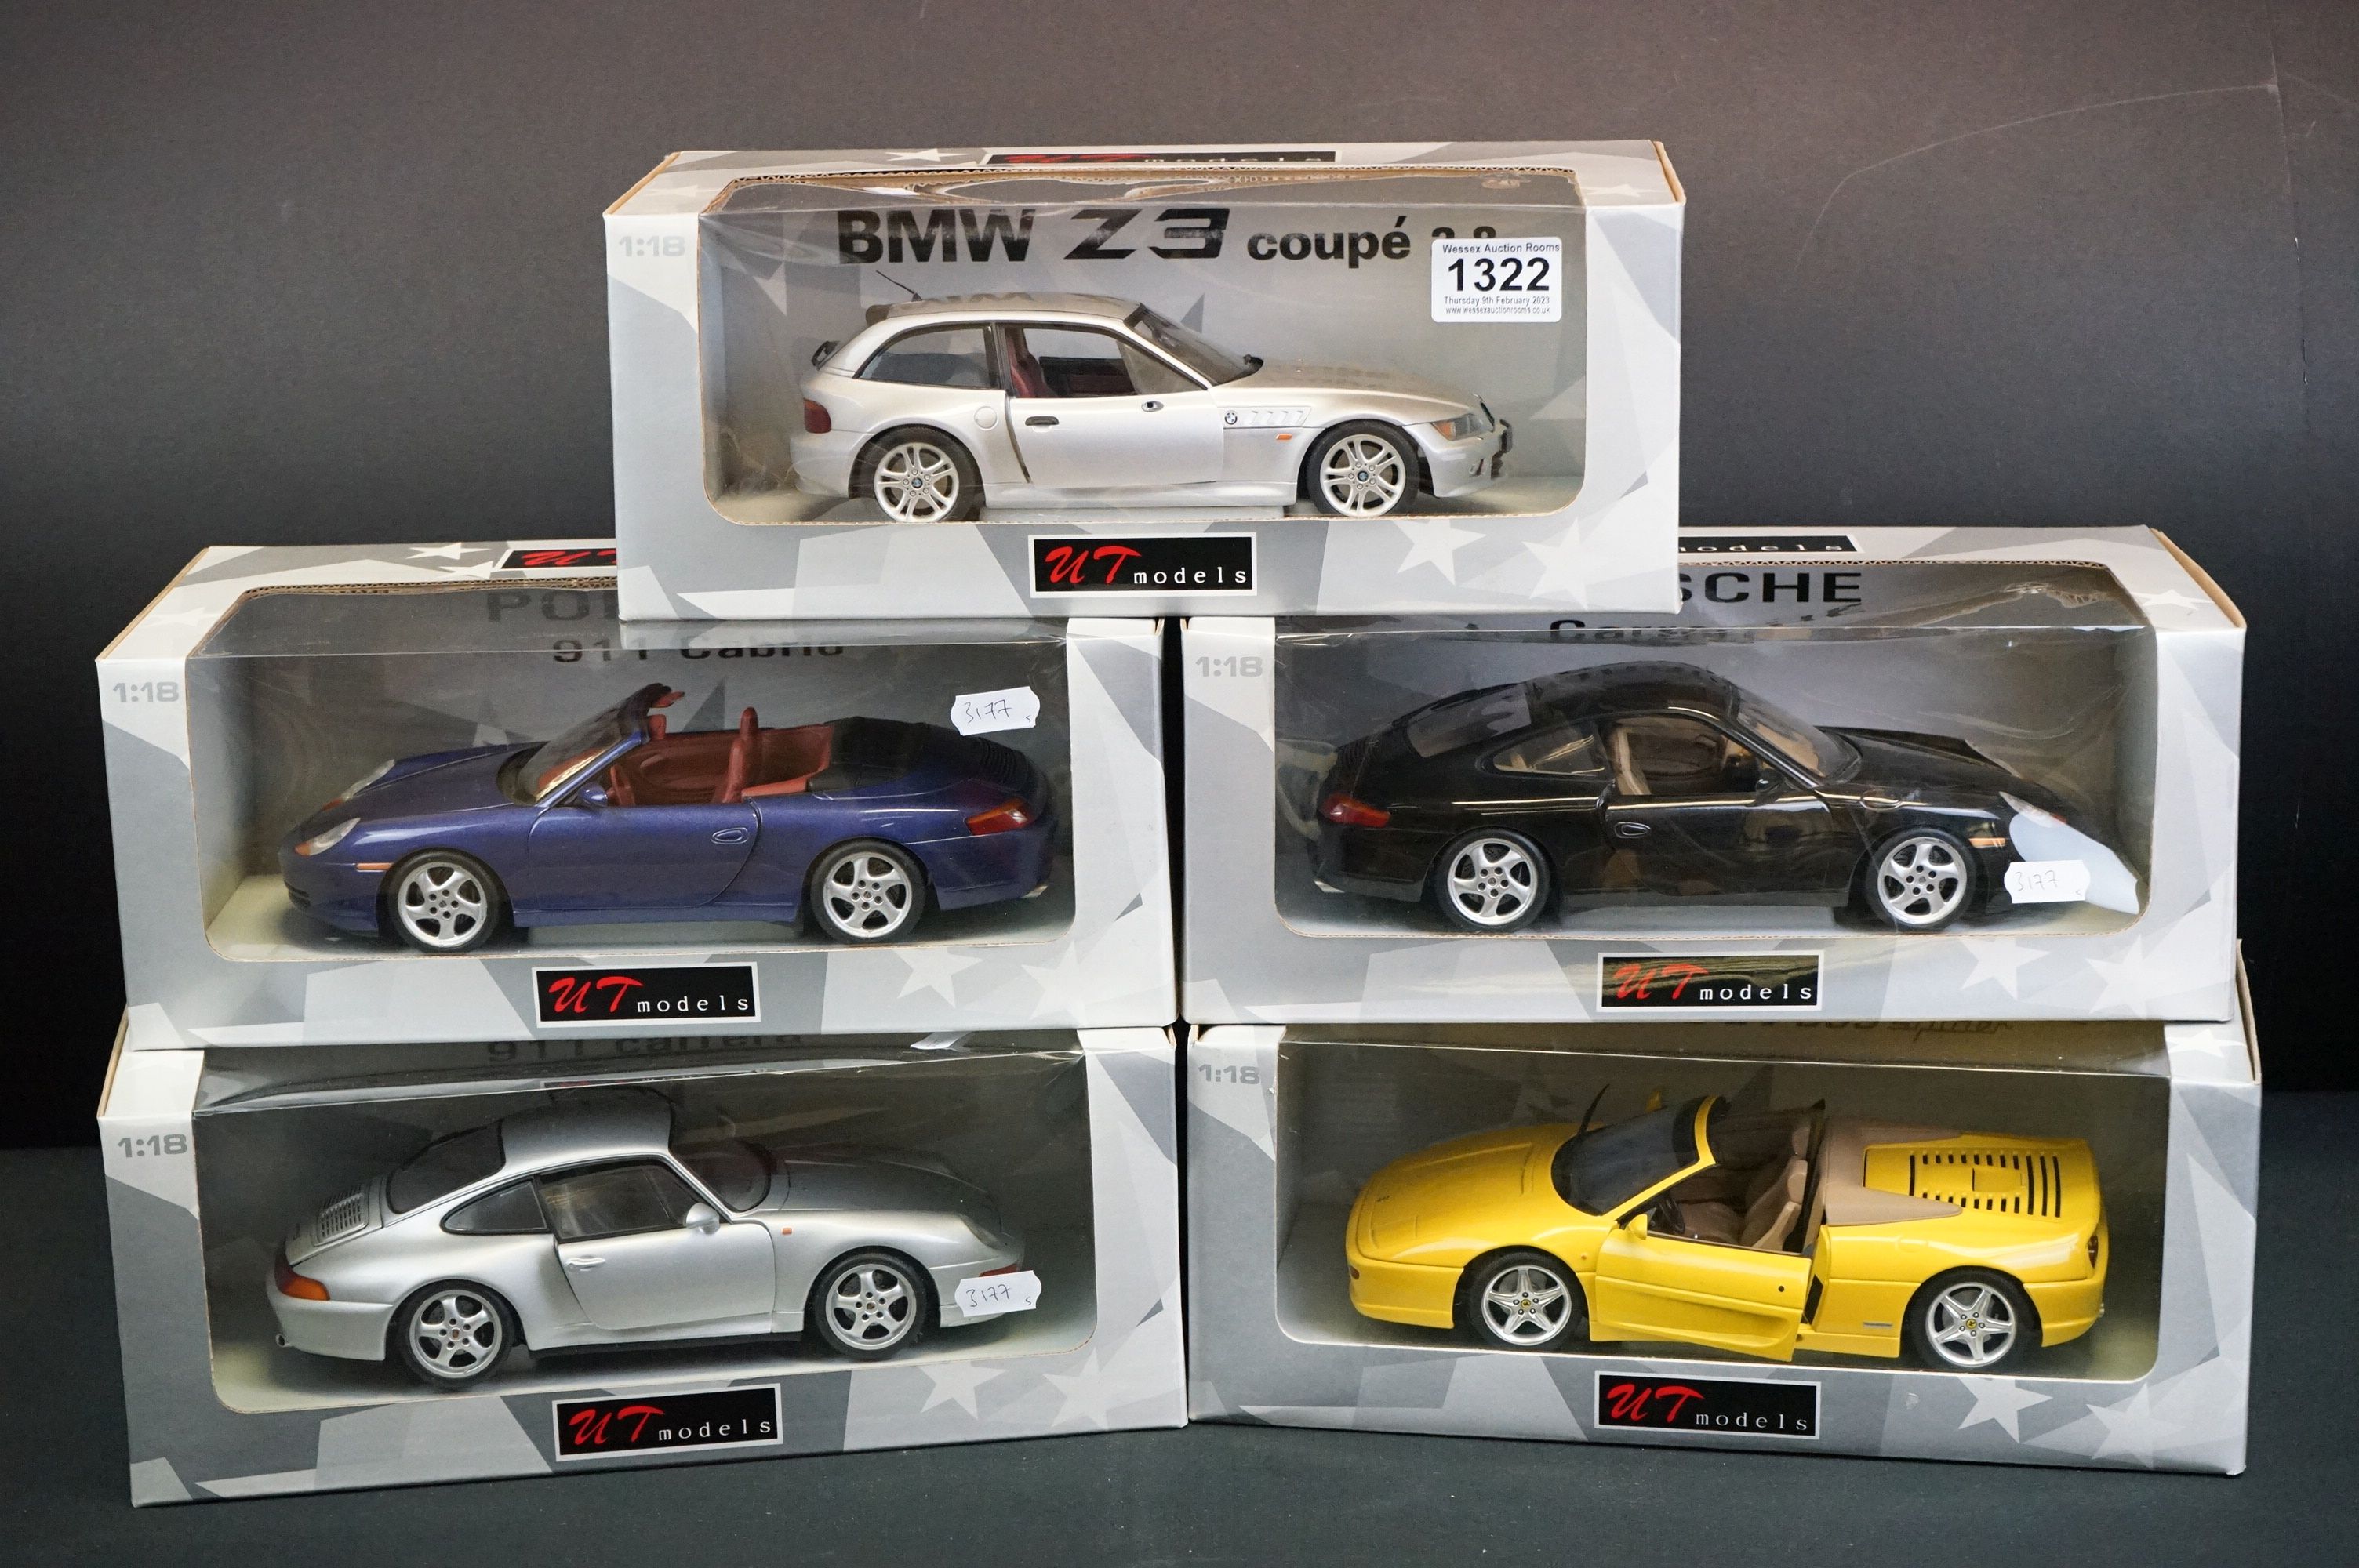 Five boxed 1/18 UT Models diecast models to include Porsche 911 Cabrio, Ferrari F355 Spider, Porsche